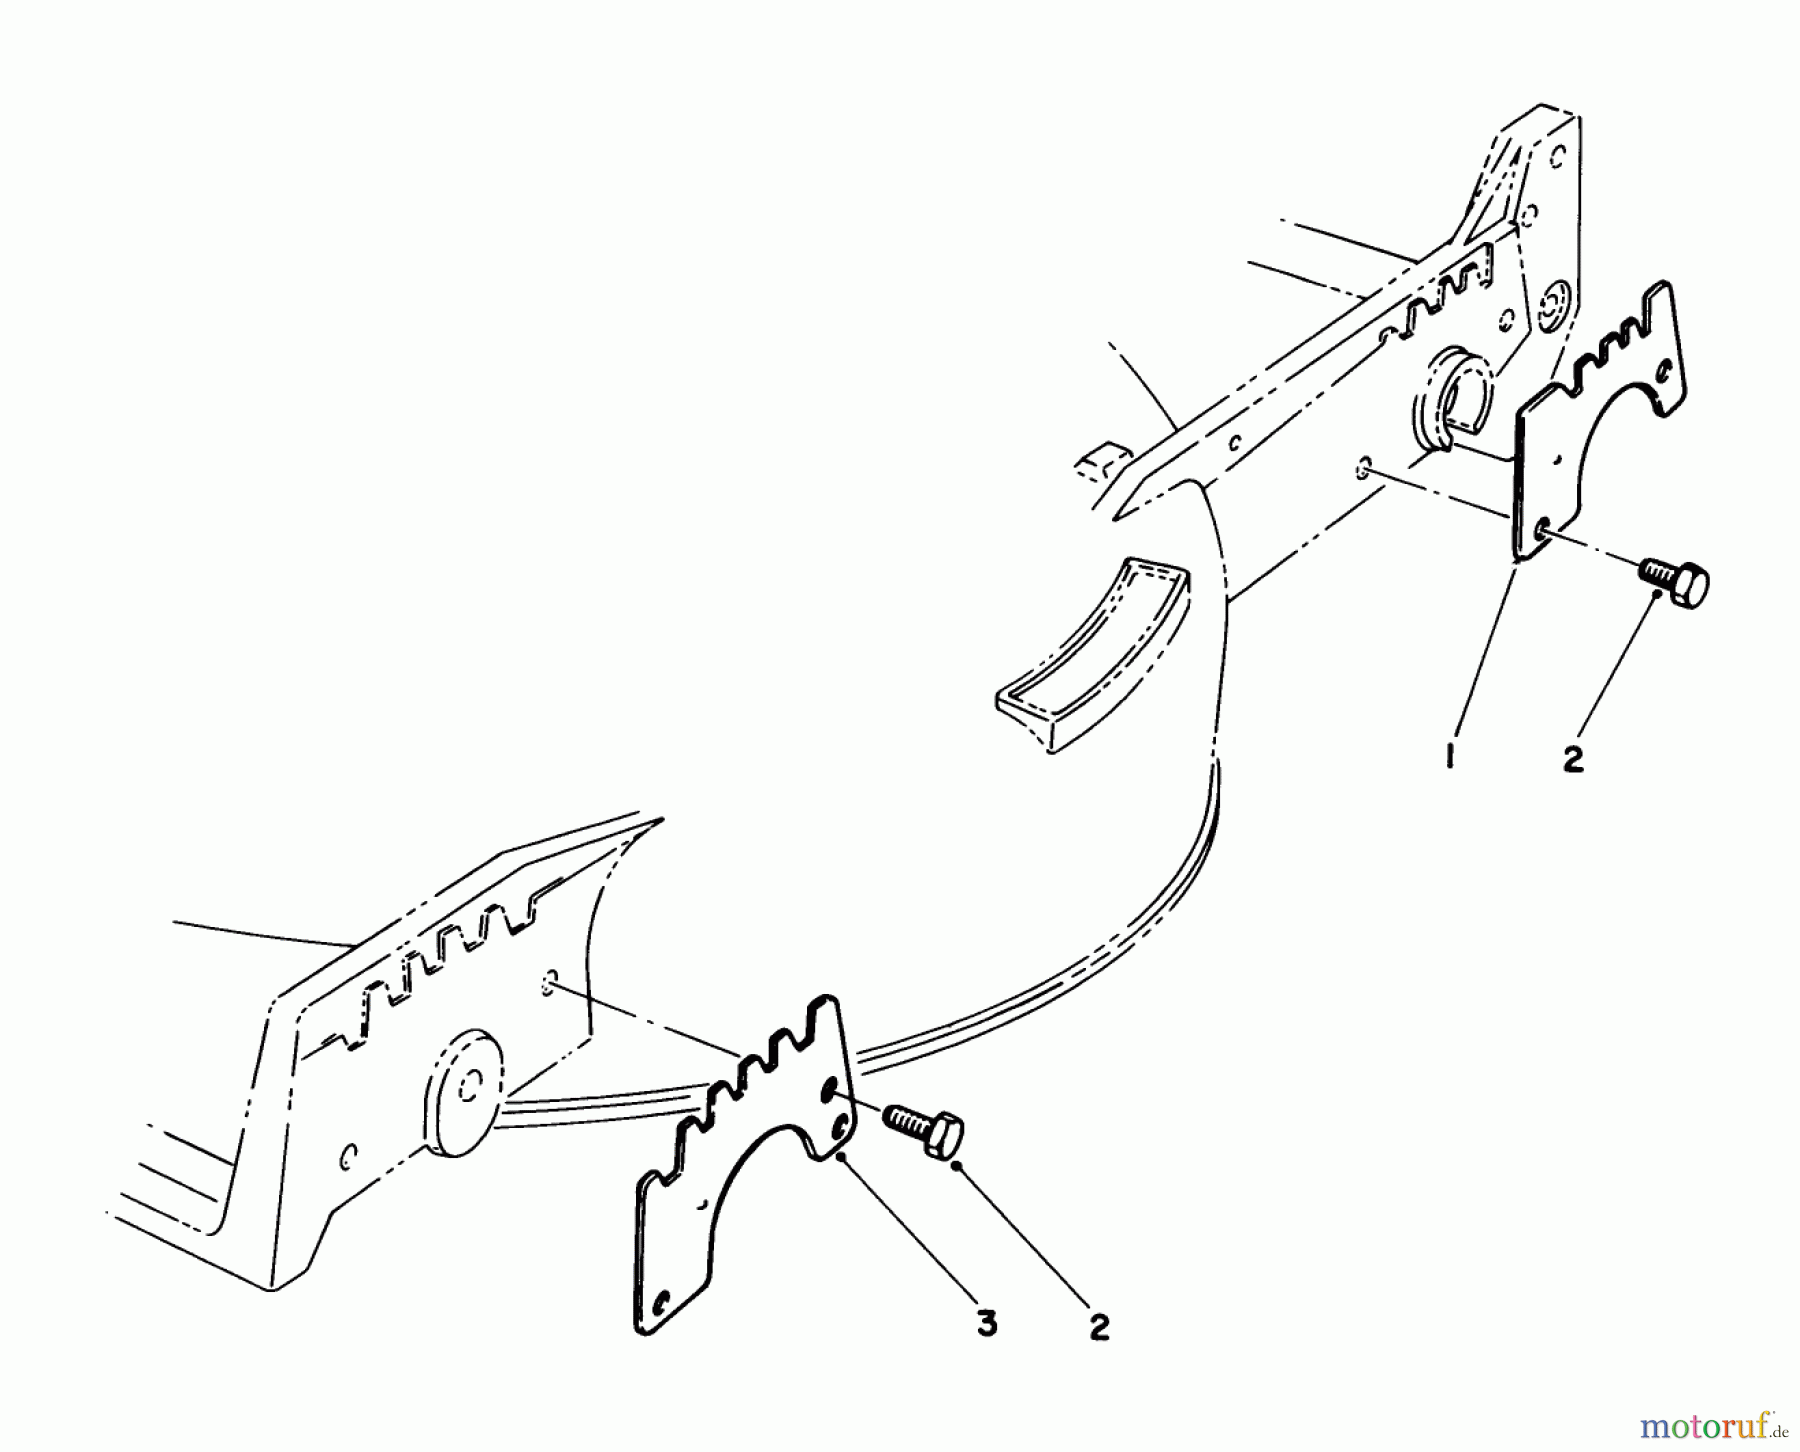  Toro Neu Mowers, Walk-Behind Seite 1 20622C - Toro Lawnmower, 1989 (9000001-9999999) WEAR PLATE KIT MODEL NO. 49-4080 (OPTIONAL)